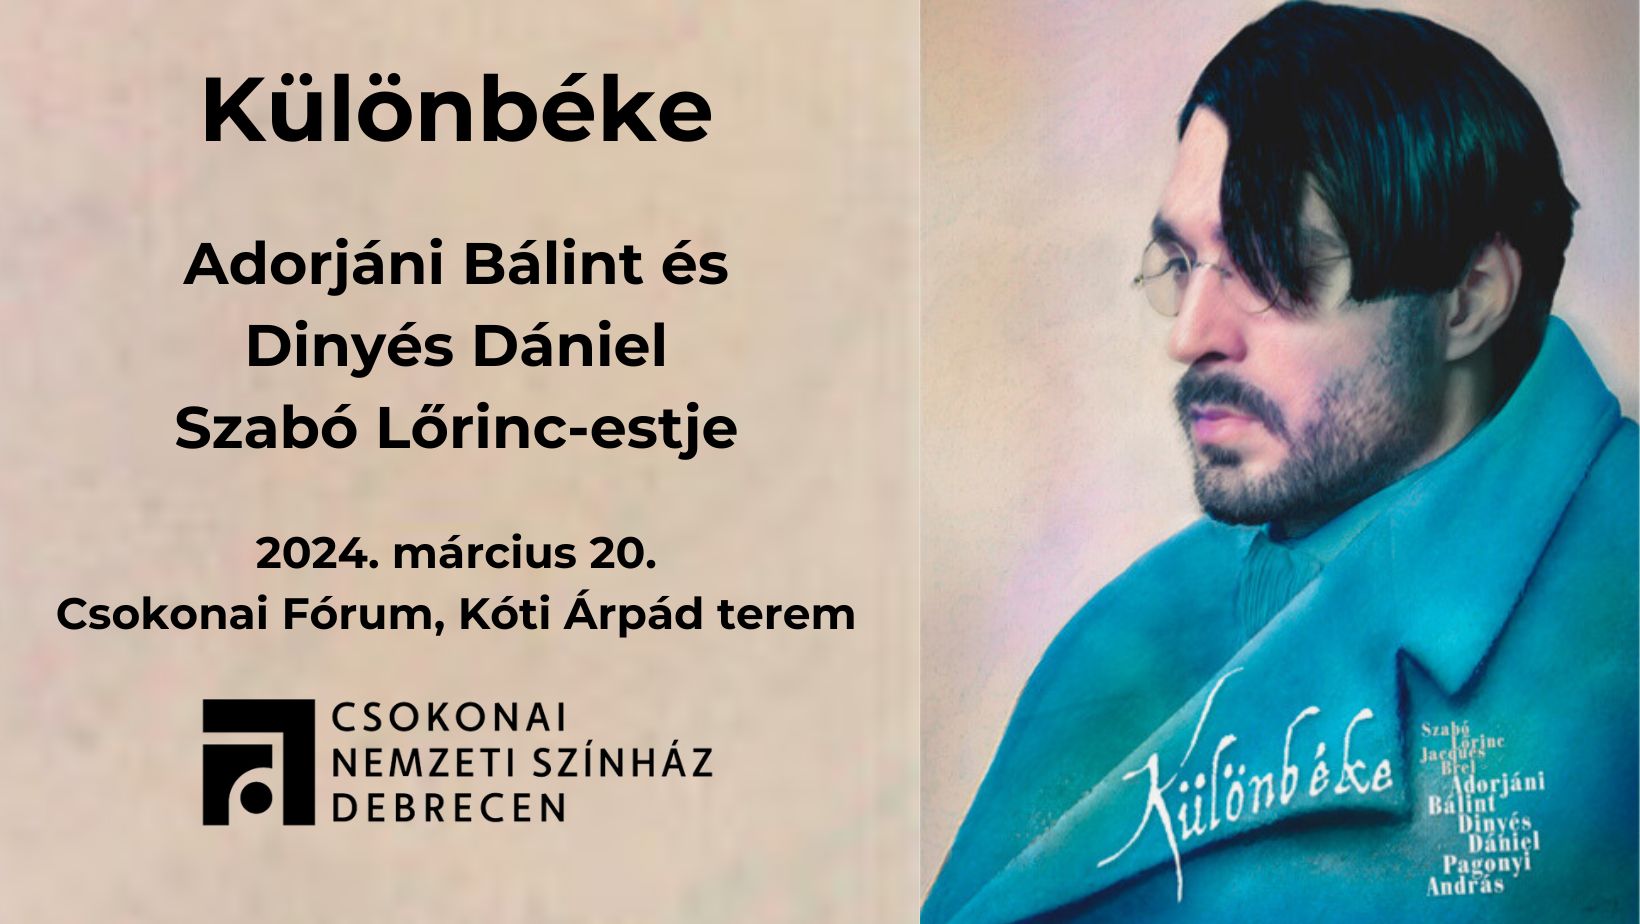 Különbéke – Adorjáni Bálint és Dinyés Dániel Szabó Lőrinc-estje